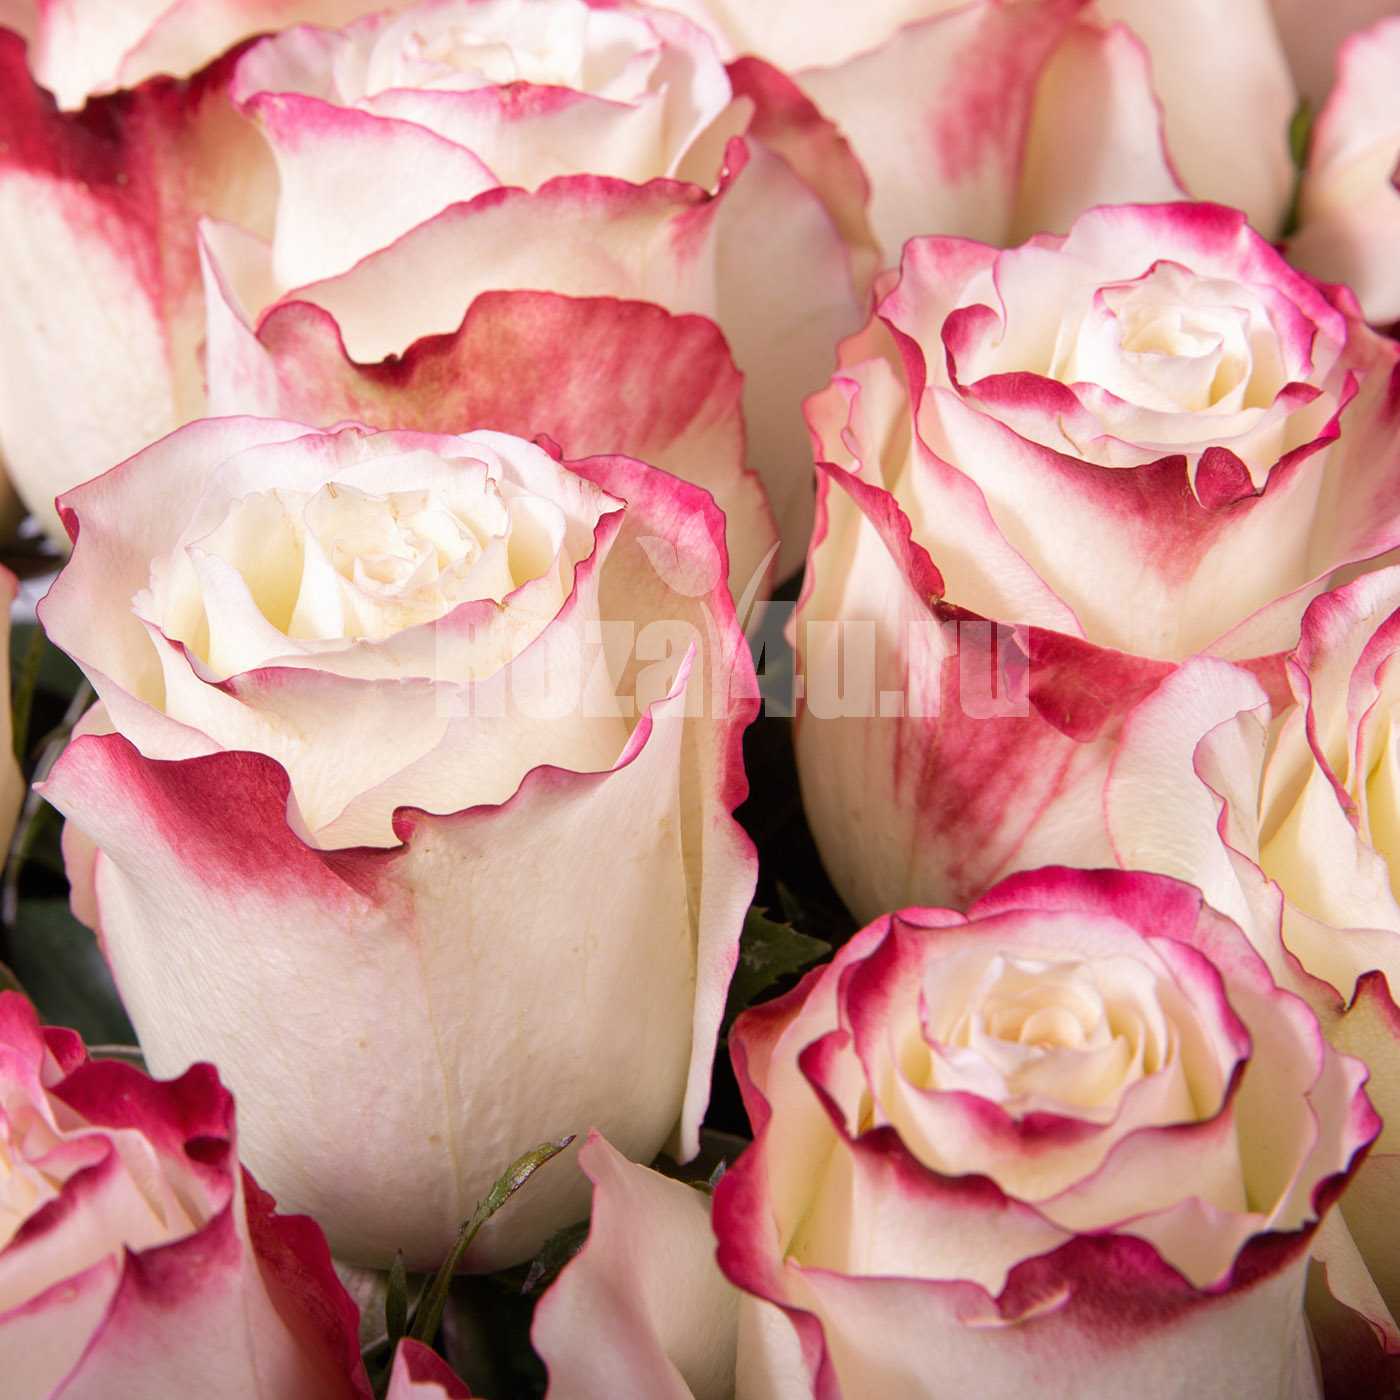 Выразительная роза ферст леди: описание и фото сорта, использование в ландшафтном дизайне, уход и другие нюансы